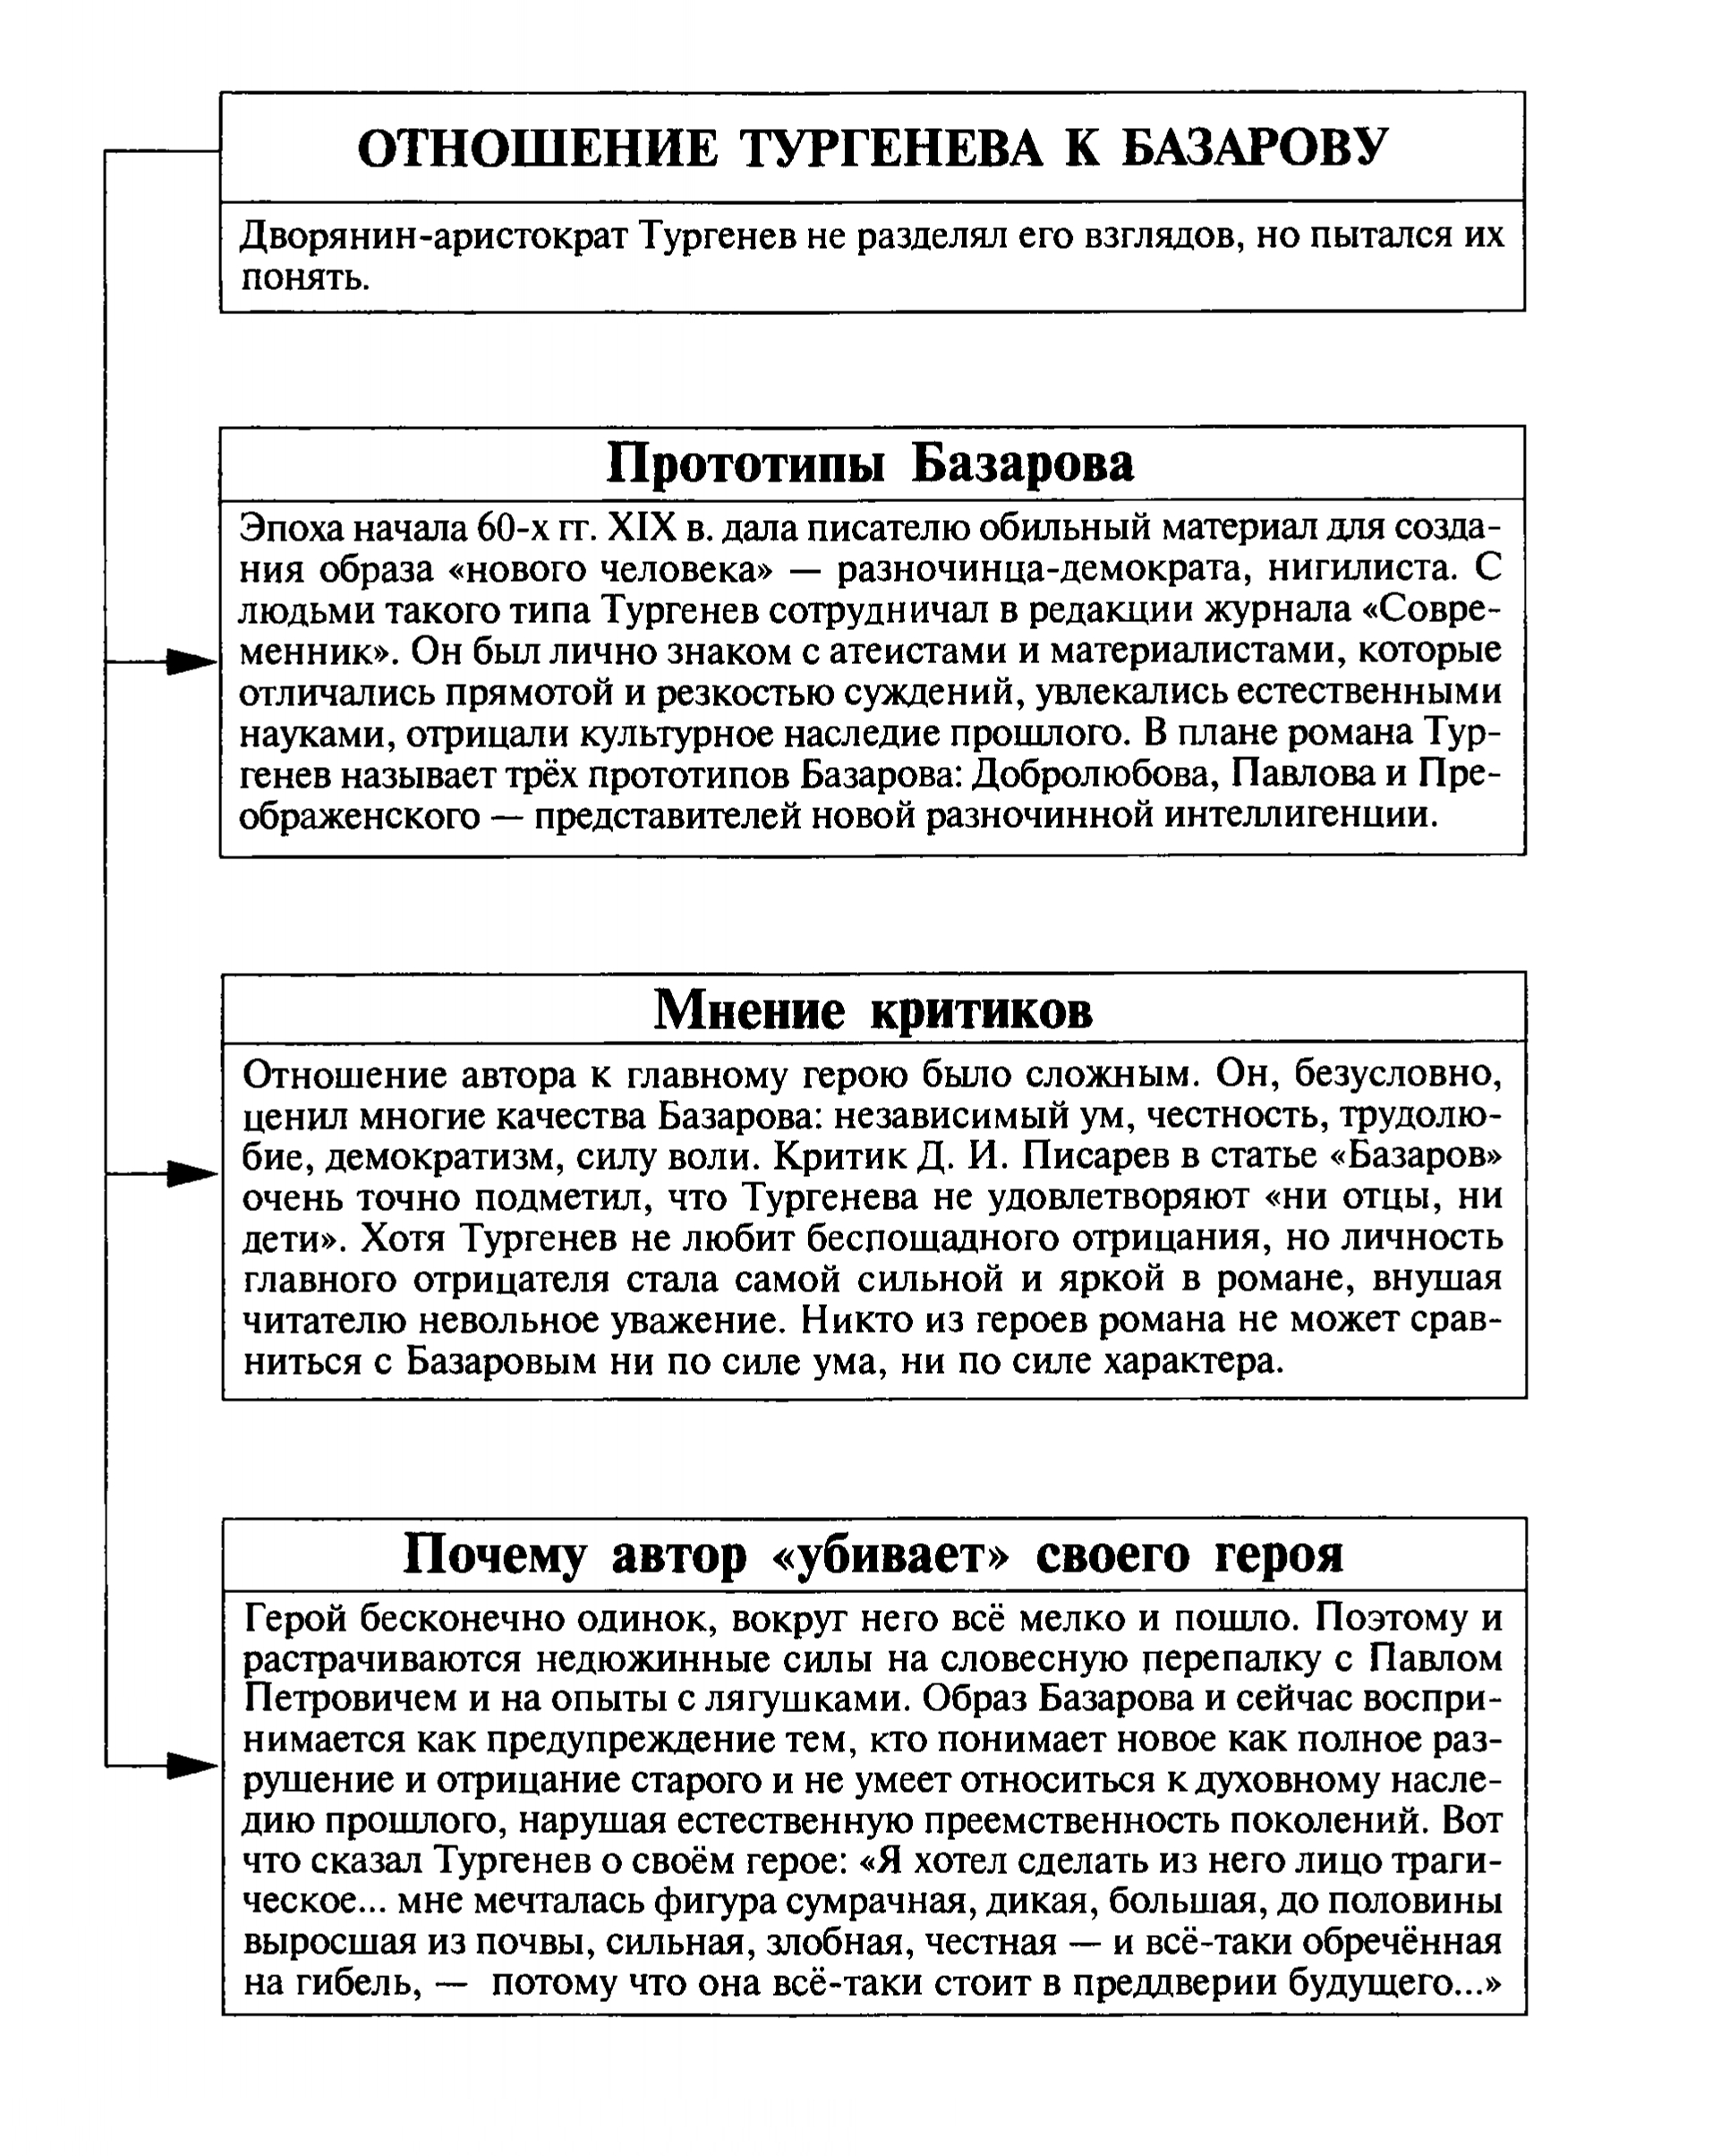 Отношение Тургенева к Базарову (таблица)